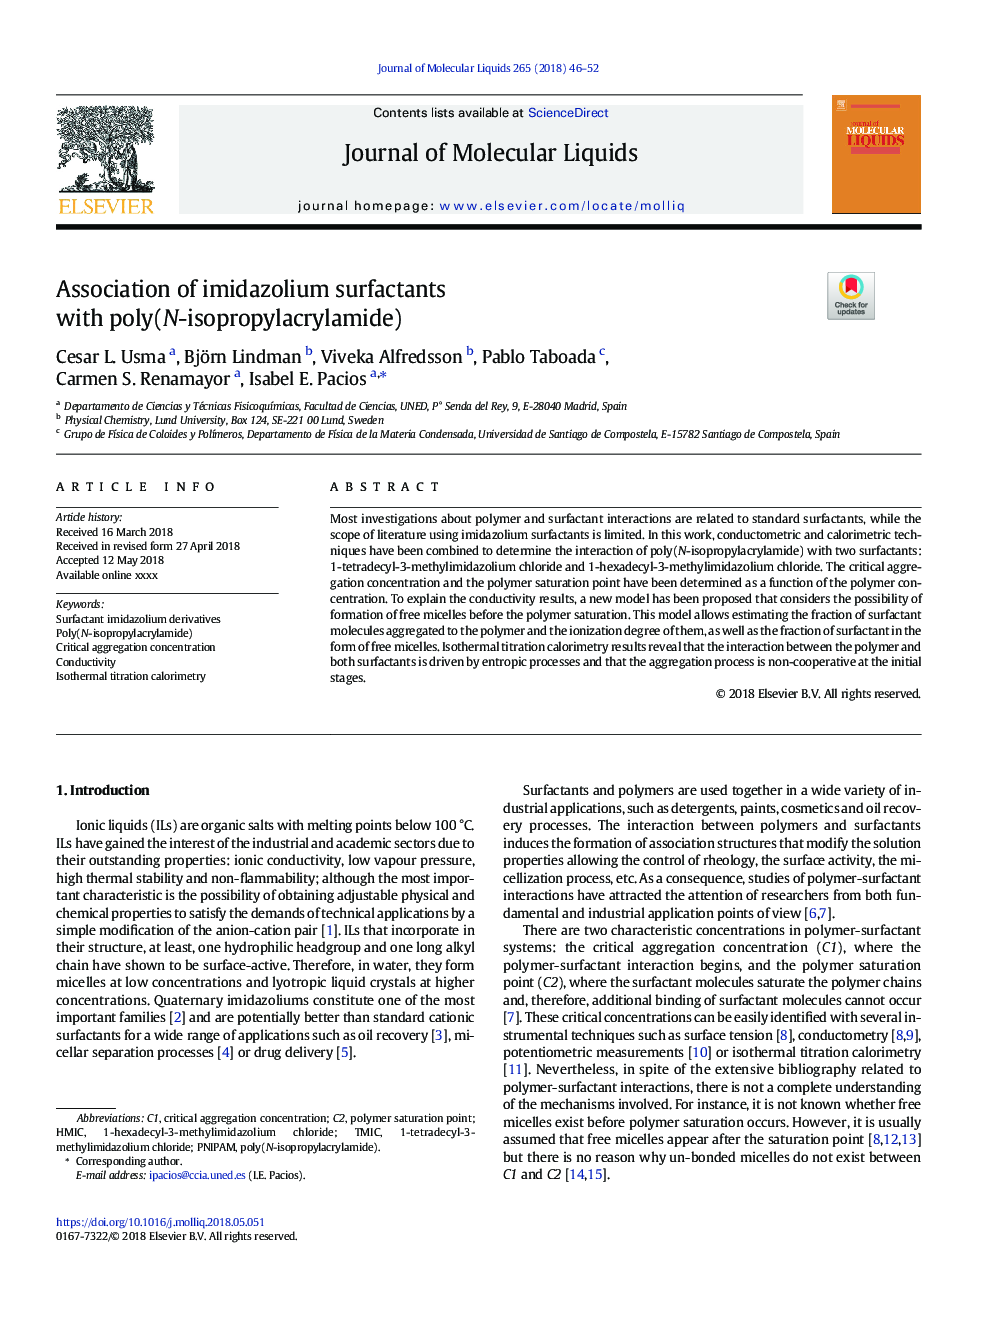 Association of imidazolium surfactants with poly(N-isopropylacrylamide)